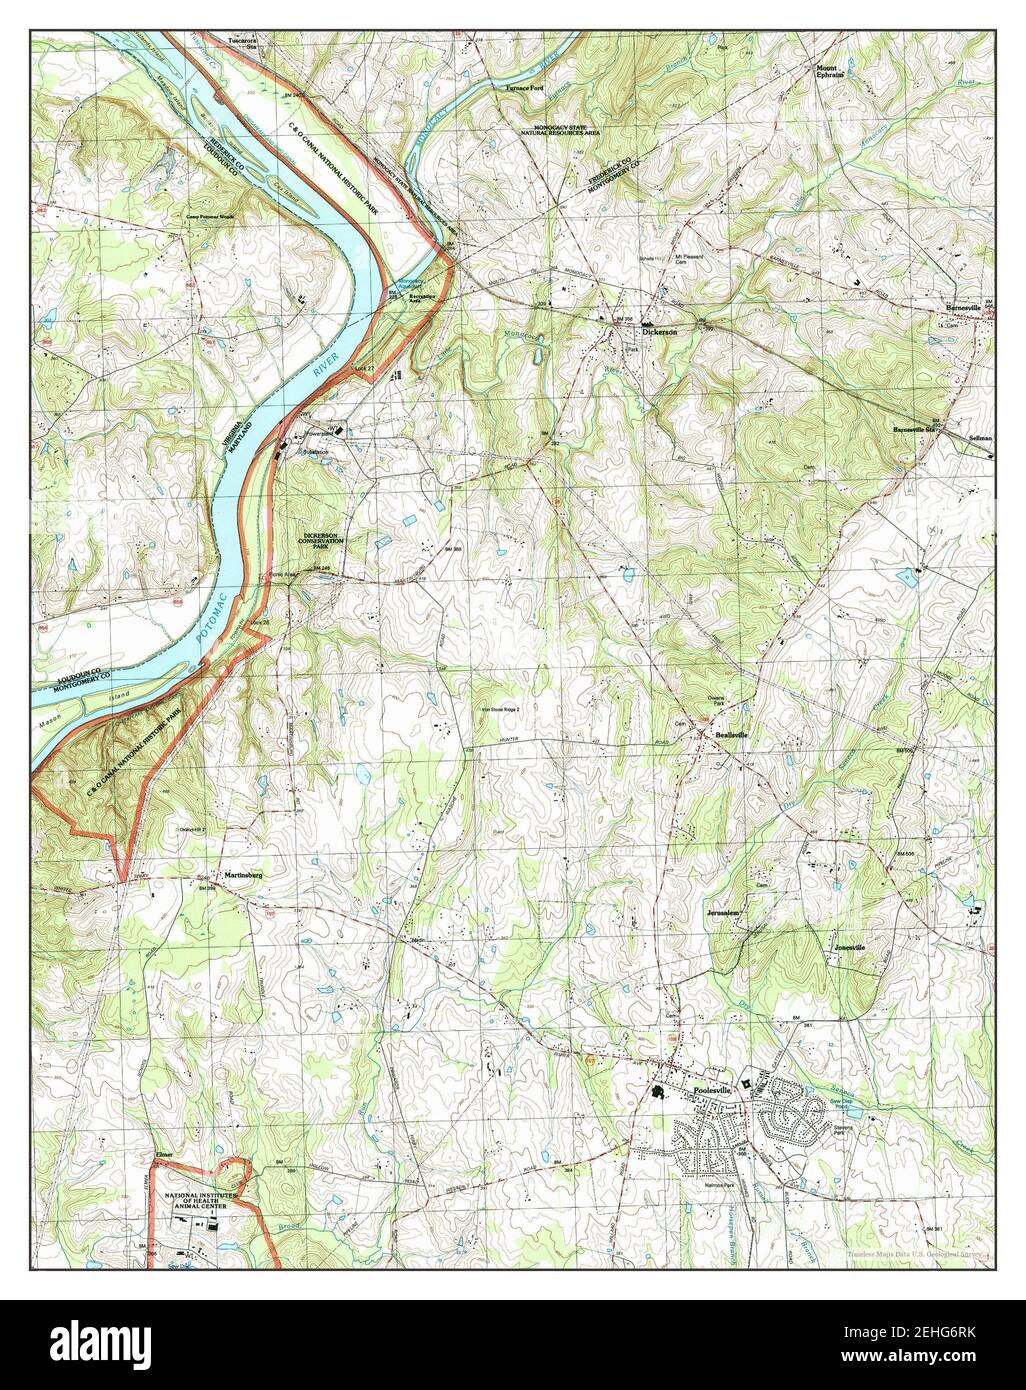 Poolesville, Maryland, Karte 1988, 1:24000, Vereinigte Staaten von Amerika von Timeless Maps, Daten U.S. Geological Survey Stockfoto